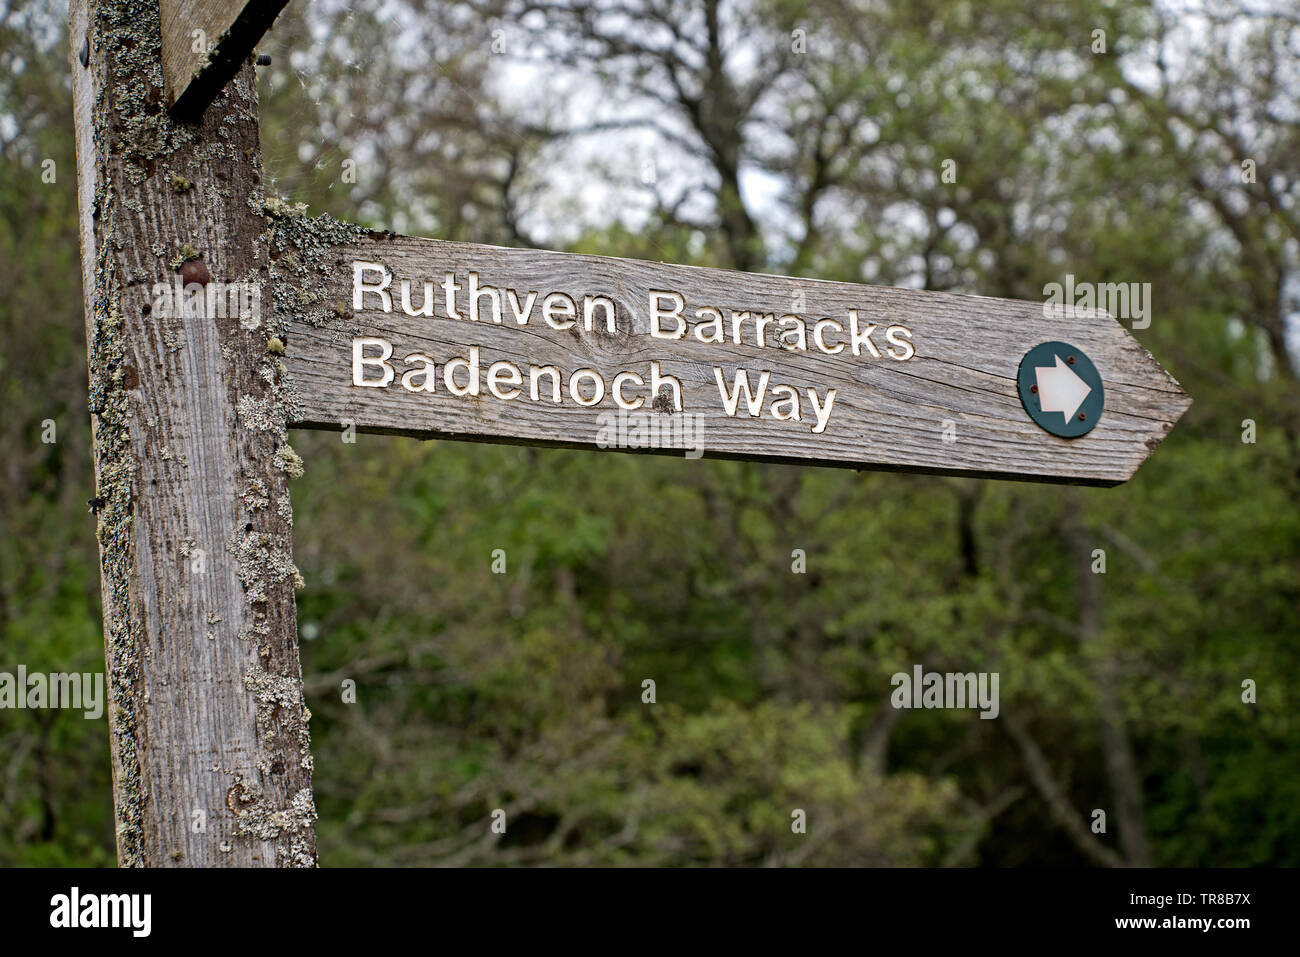 Bandeoch Weise Wegweiser nach Ruthven Barracks, von historischen Schottland gehört, in der Nähe von Kingussie in Cairngorm National Park, Schottland, Großbritannien. Stockfoto